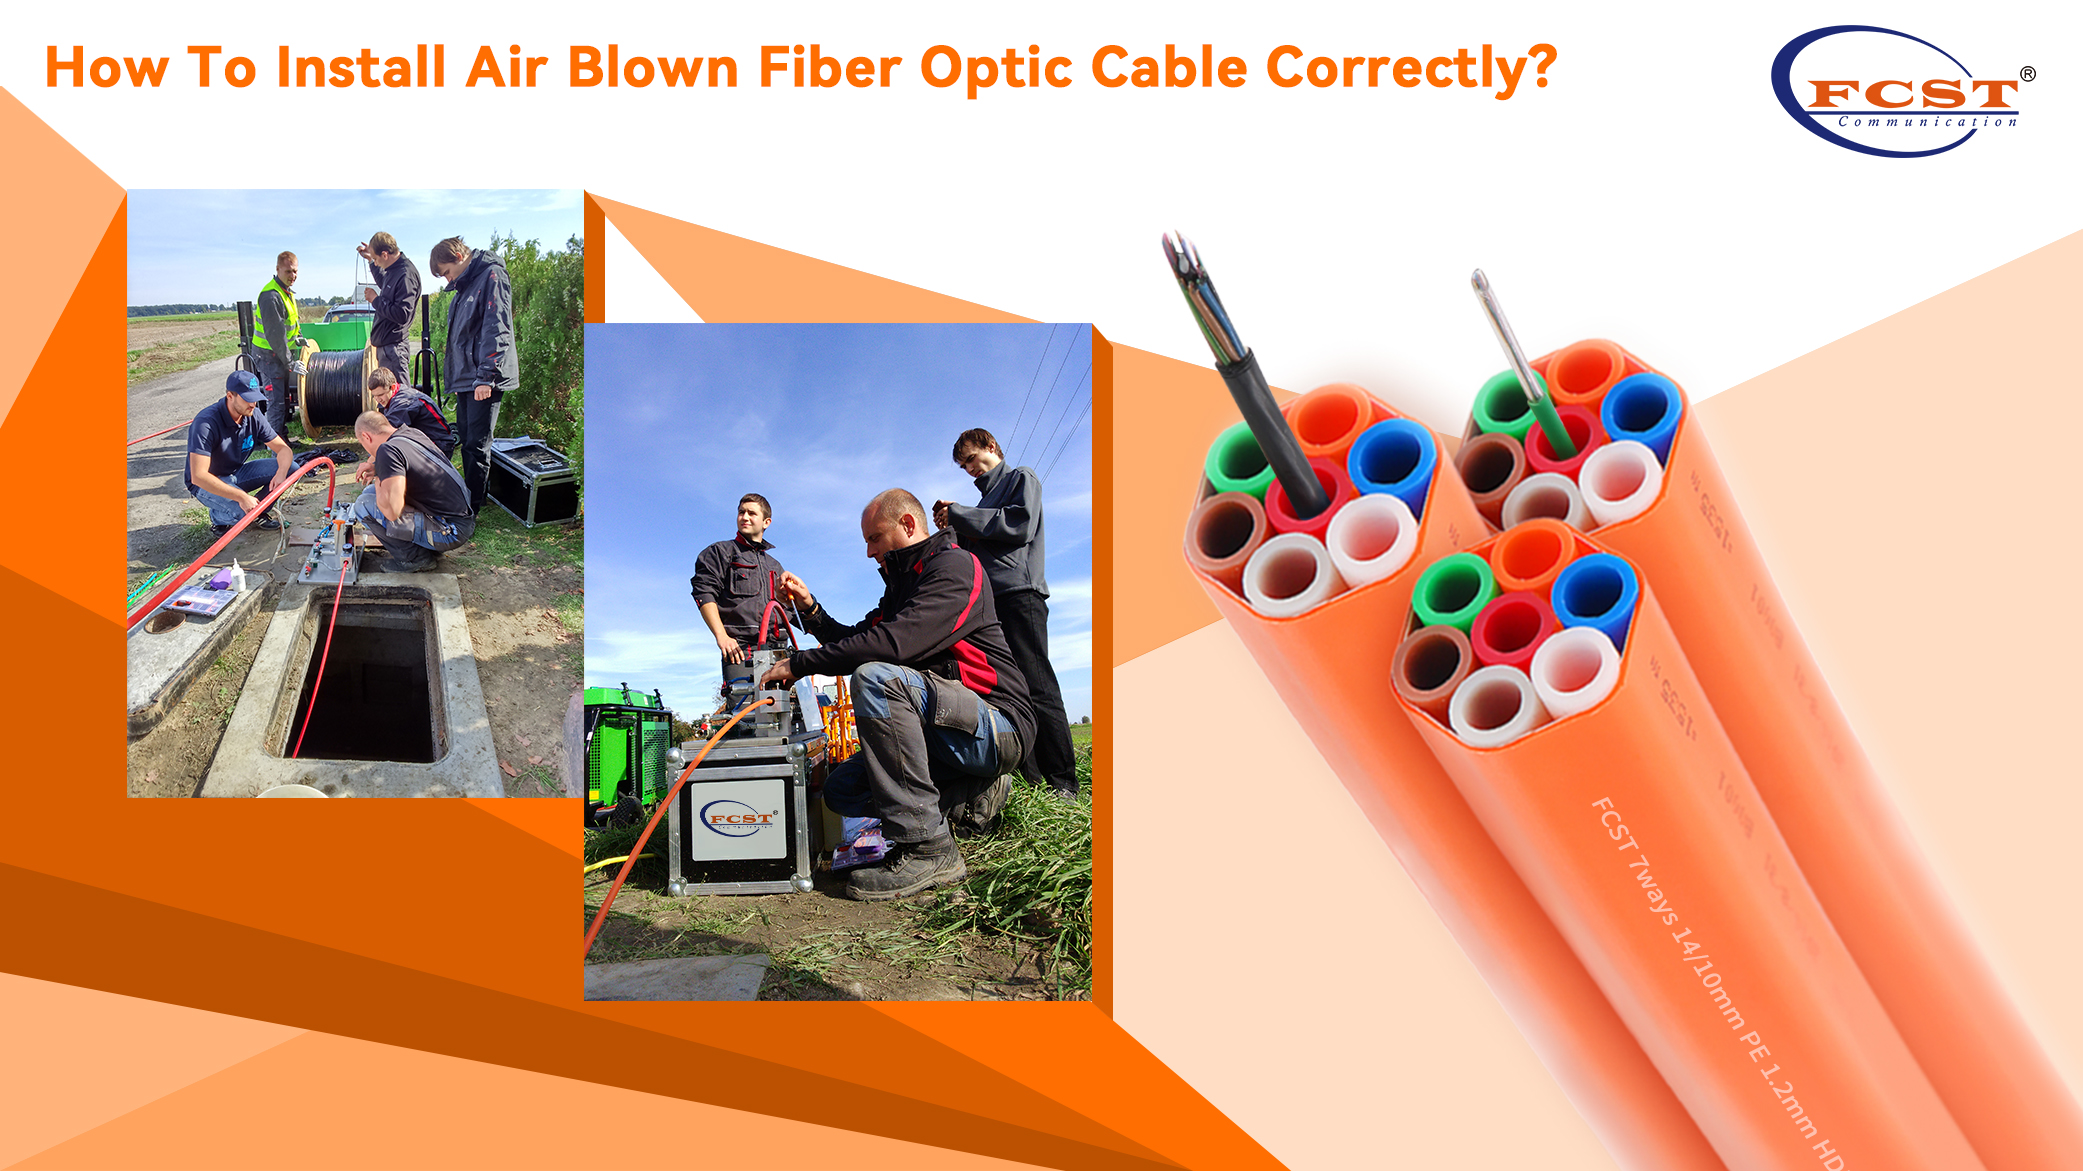 Comment installer correctement le câble à fibre optique soufflé à l'air